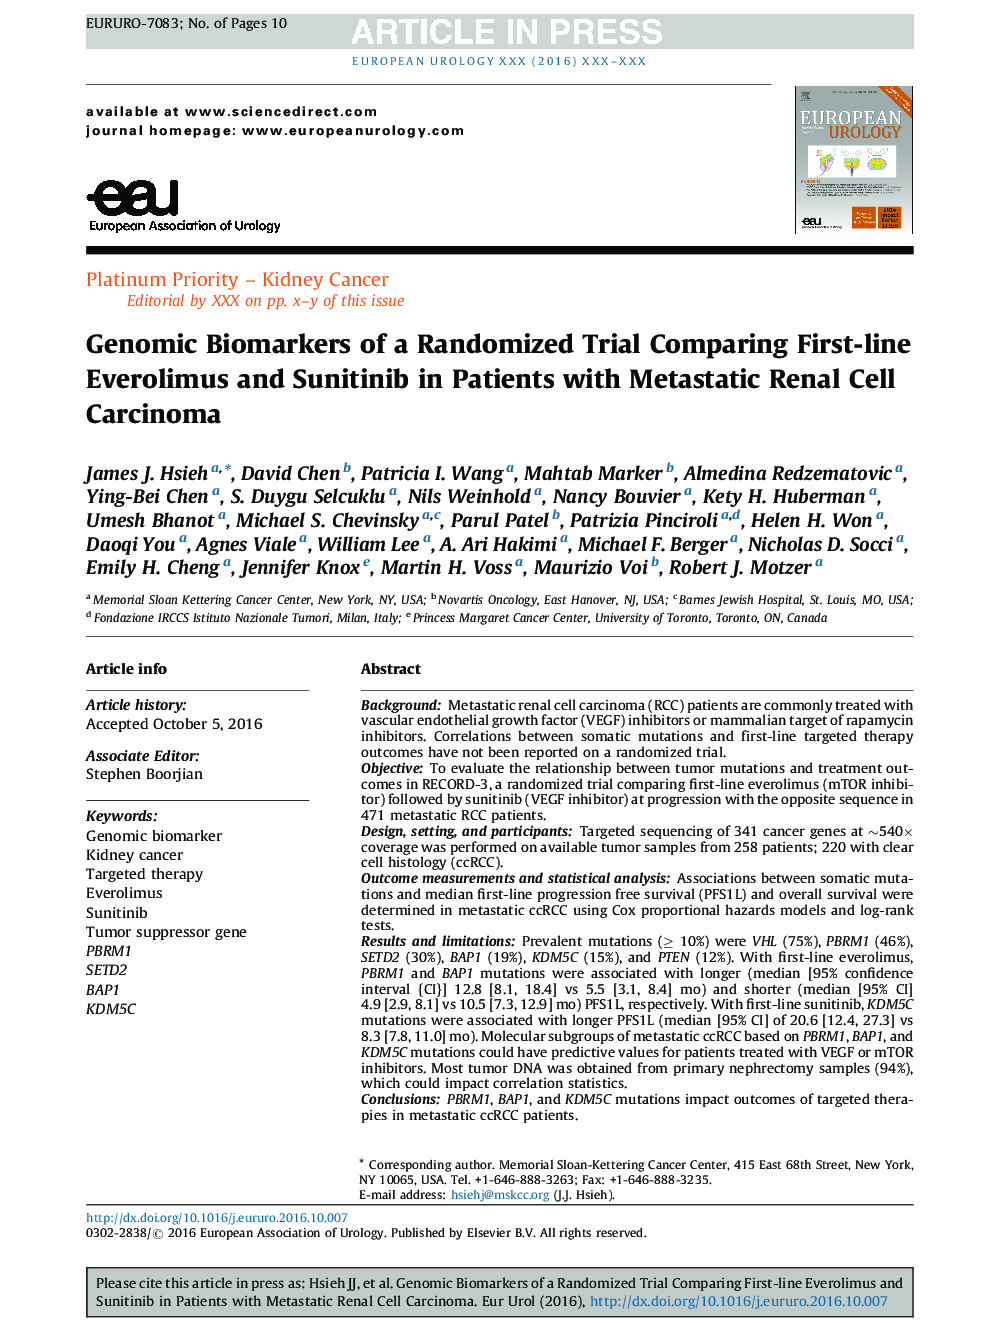 بیومارکرهای ژنومی یک آزمایش تصادفی مقایسه مقادیر اولولیموس و سانیتینیب در بیماران مبتلا به سل کارسینوم سلولهای متاستاتیک 